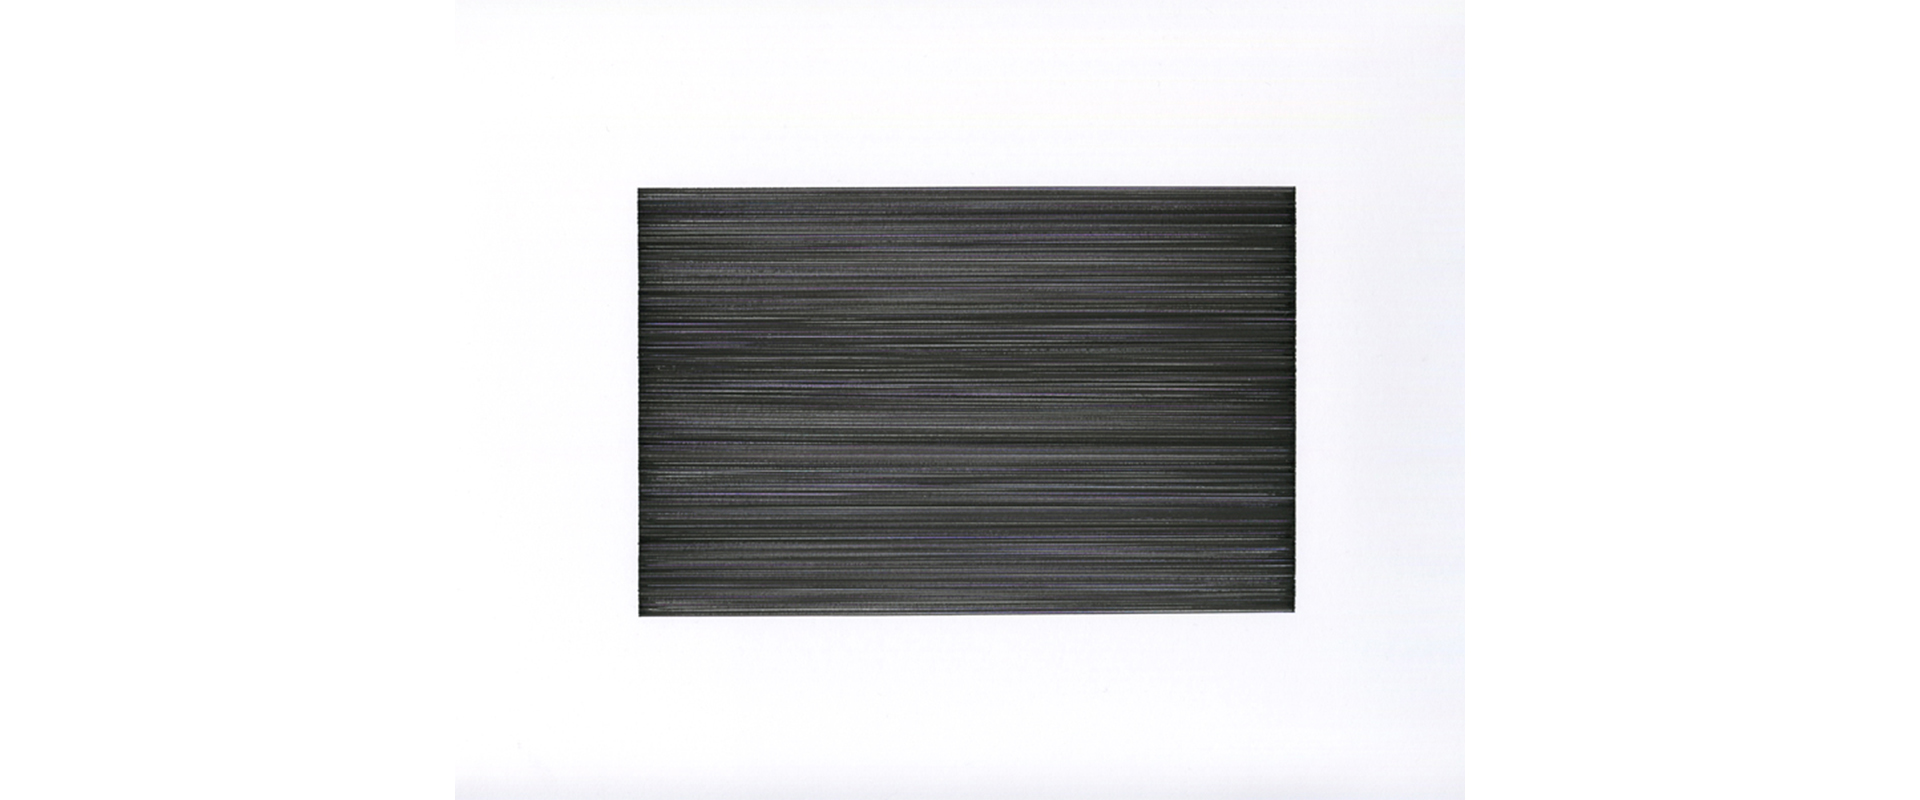 Ohne Titel (T-2021) – 2020, Farbige Tinte auf Papier, 11,5 x 17,5 cm (Blattgröße 42 x 29,7cm)